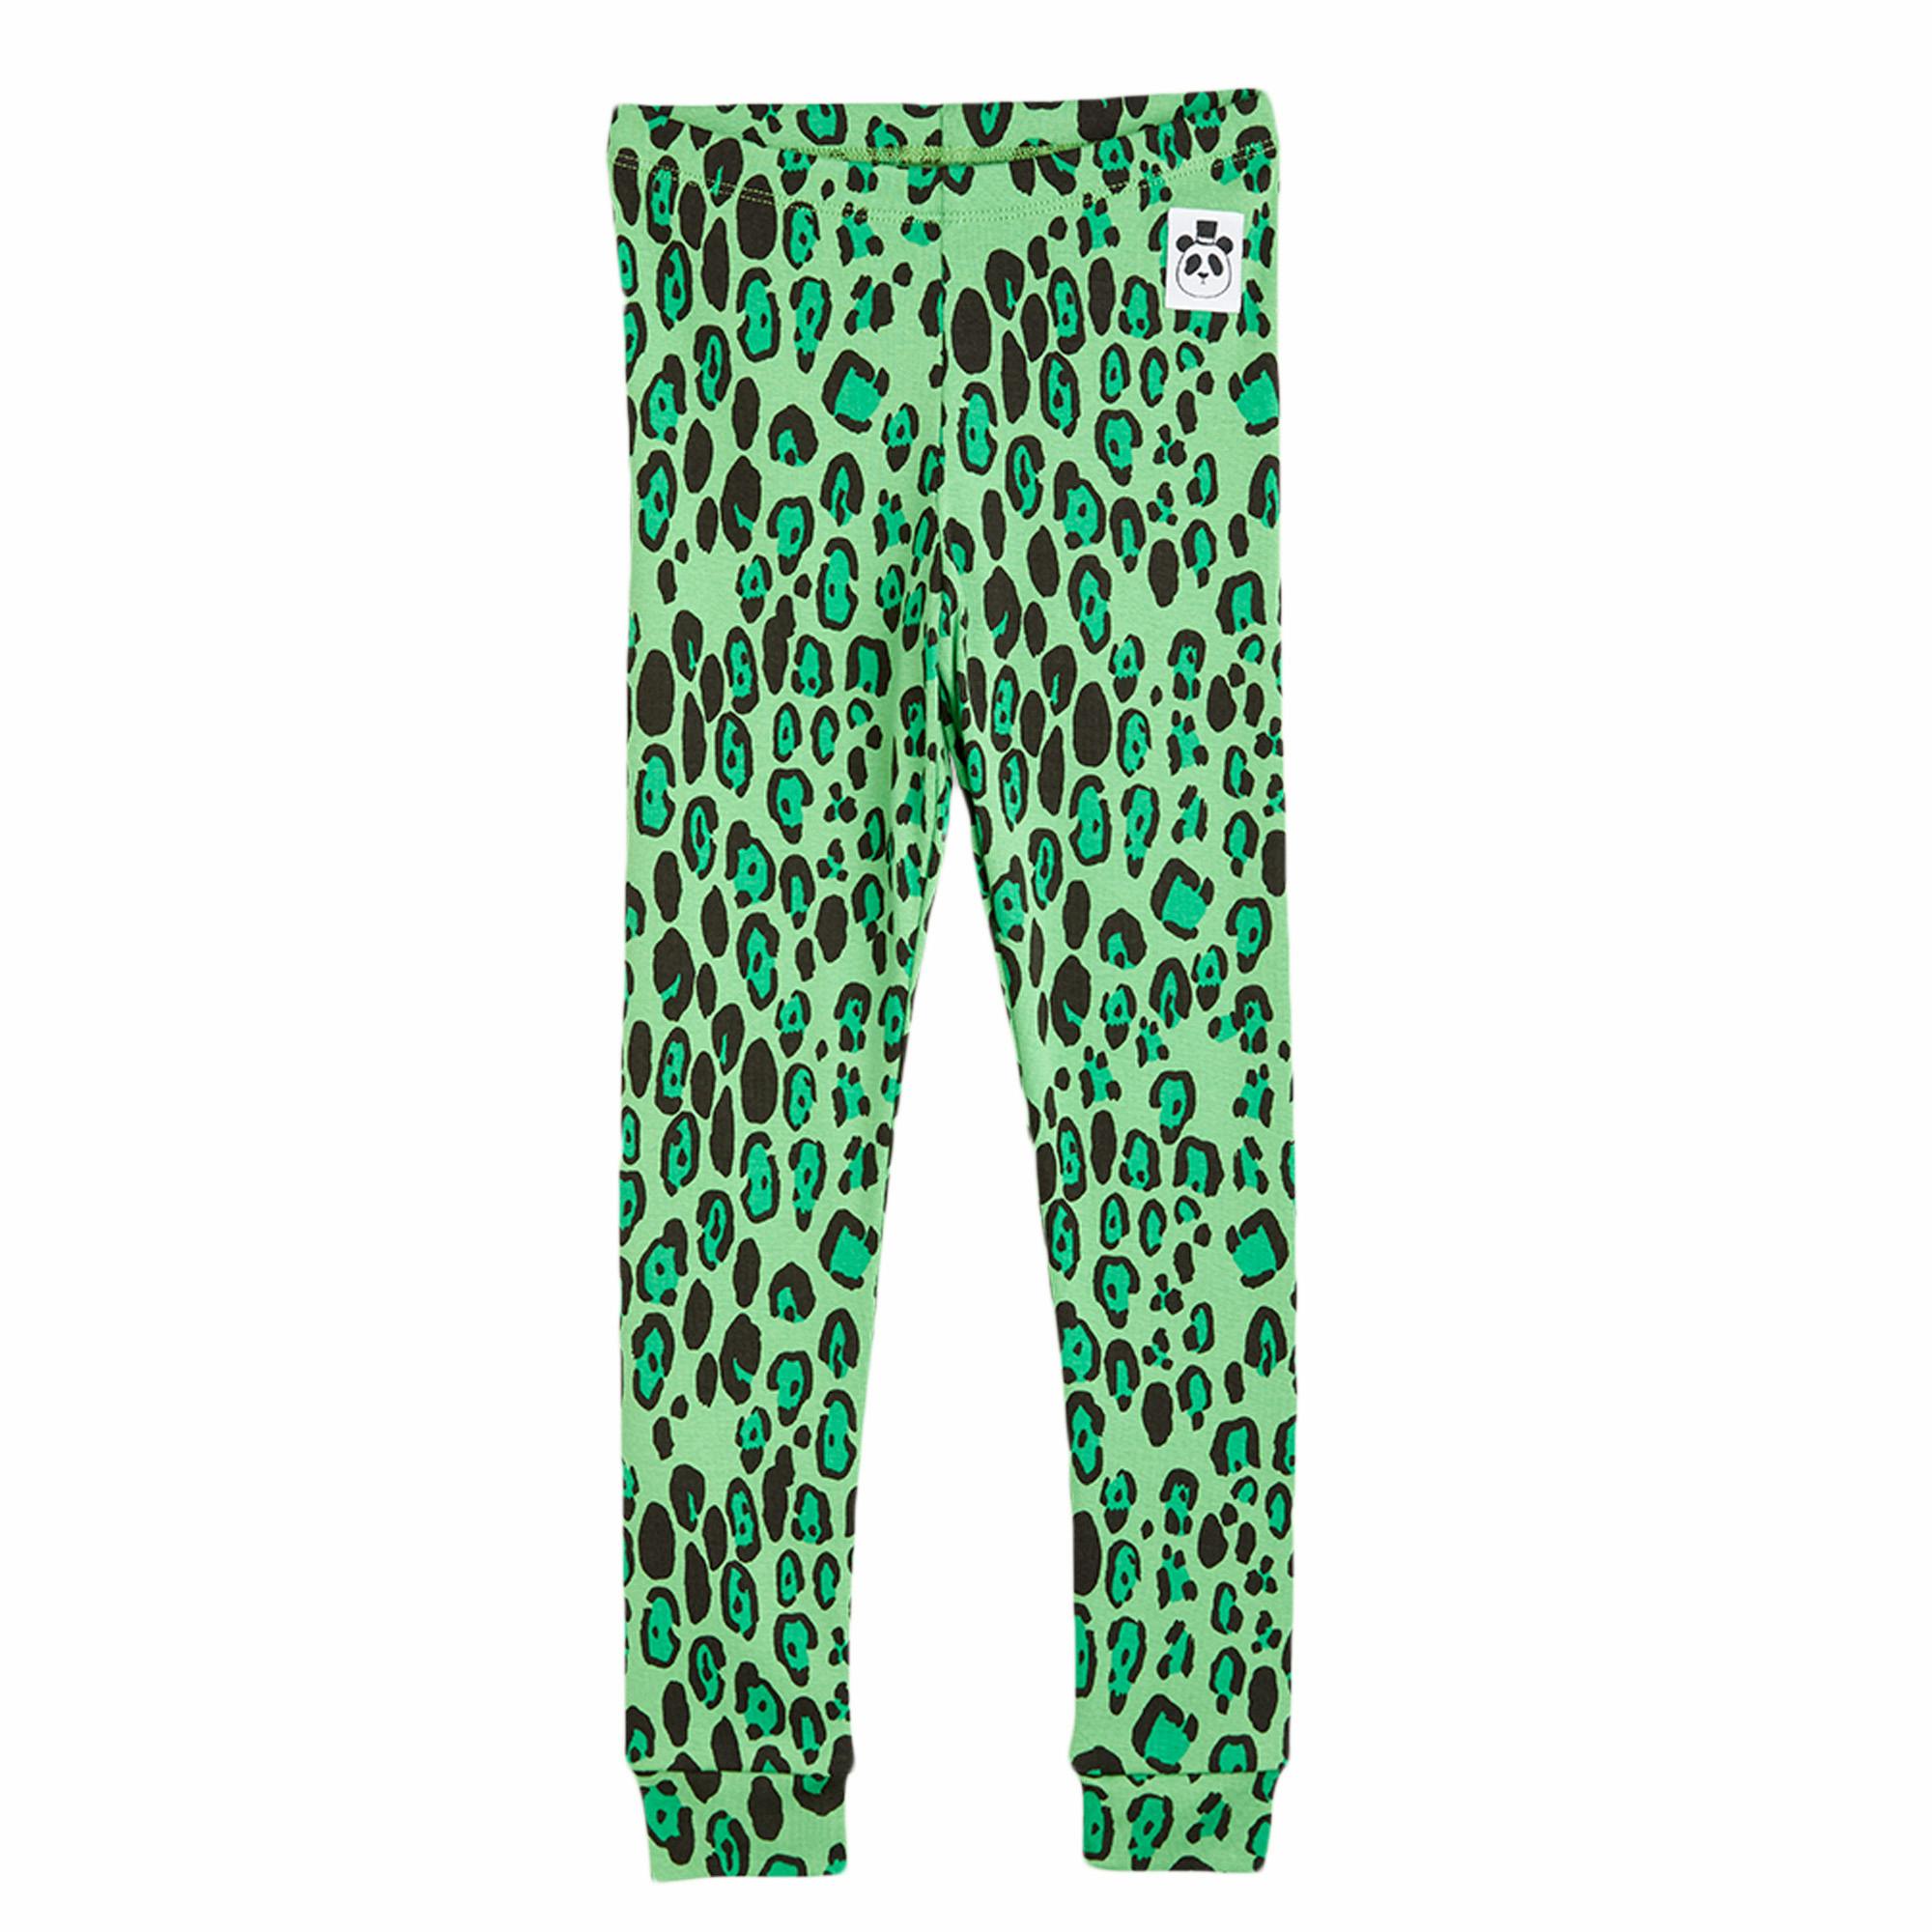 Leggings - Leopard green